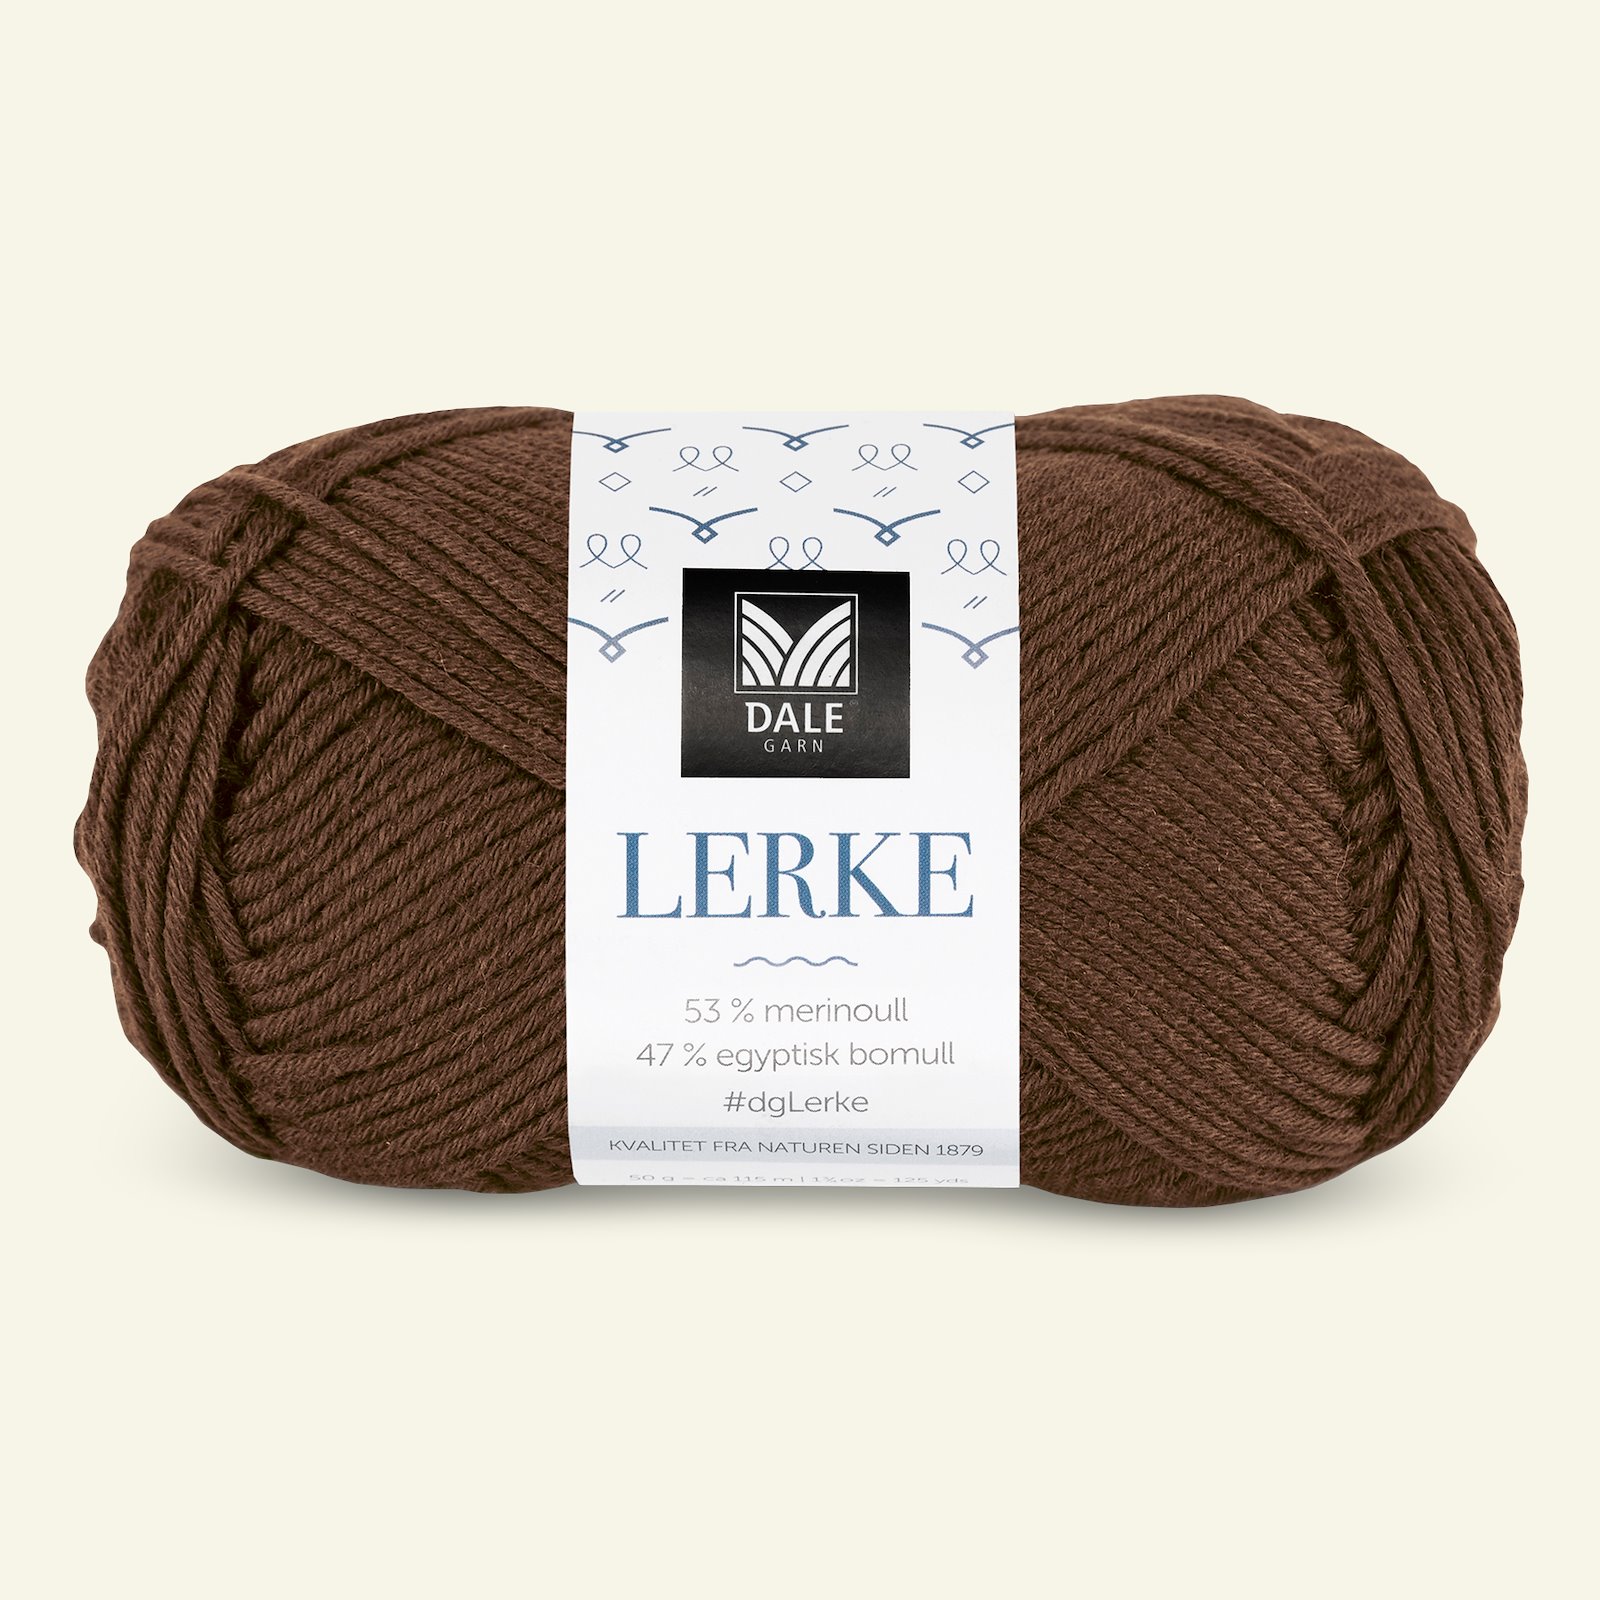 Dale Garn,merino bomullsgarn "Lerke", lys brun (8156) 90000858_pack